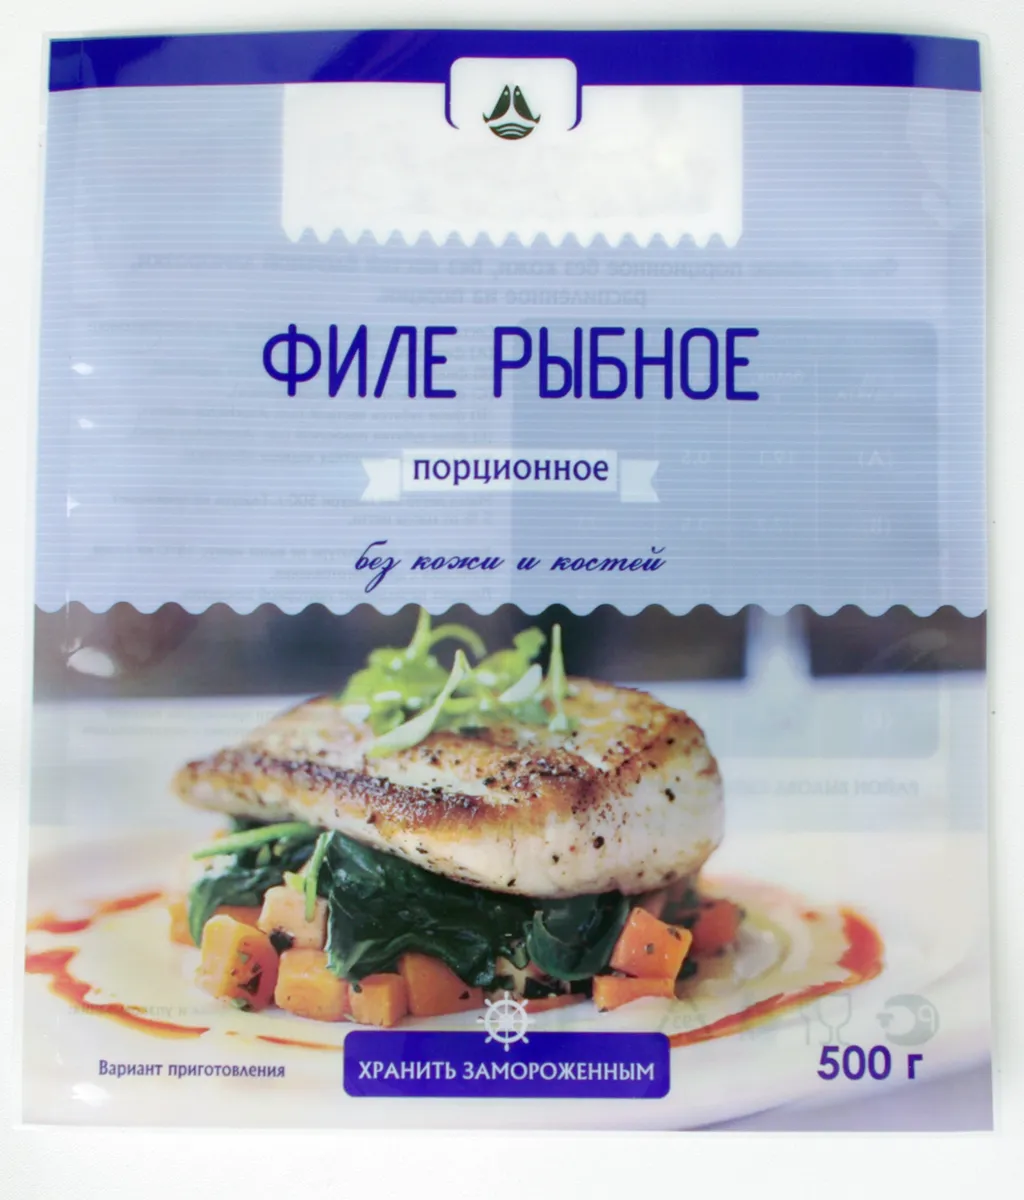 упаковка морепродуктов для розницы в Москве 5